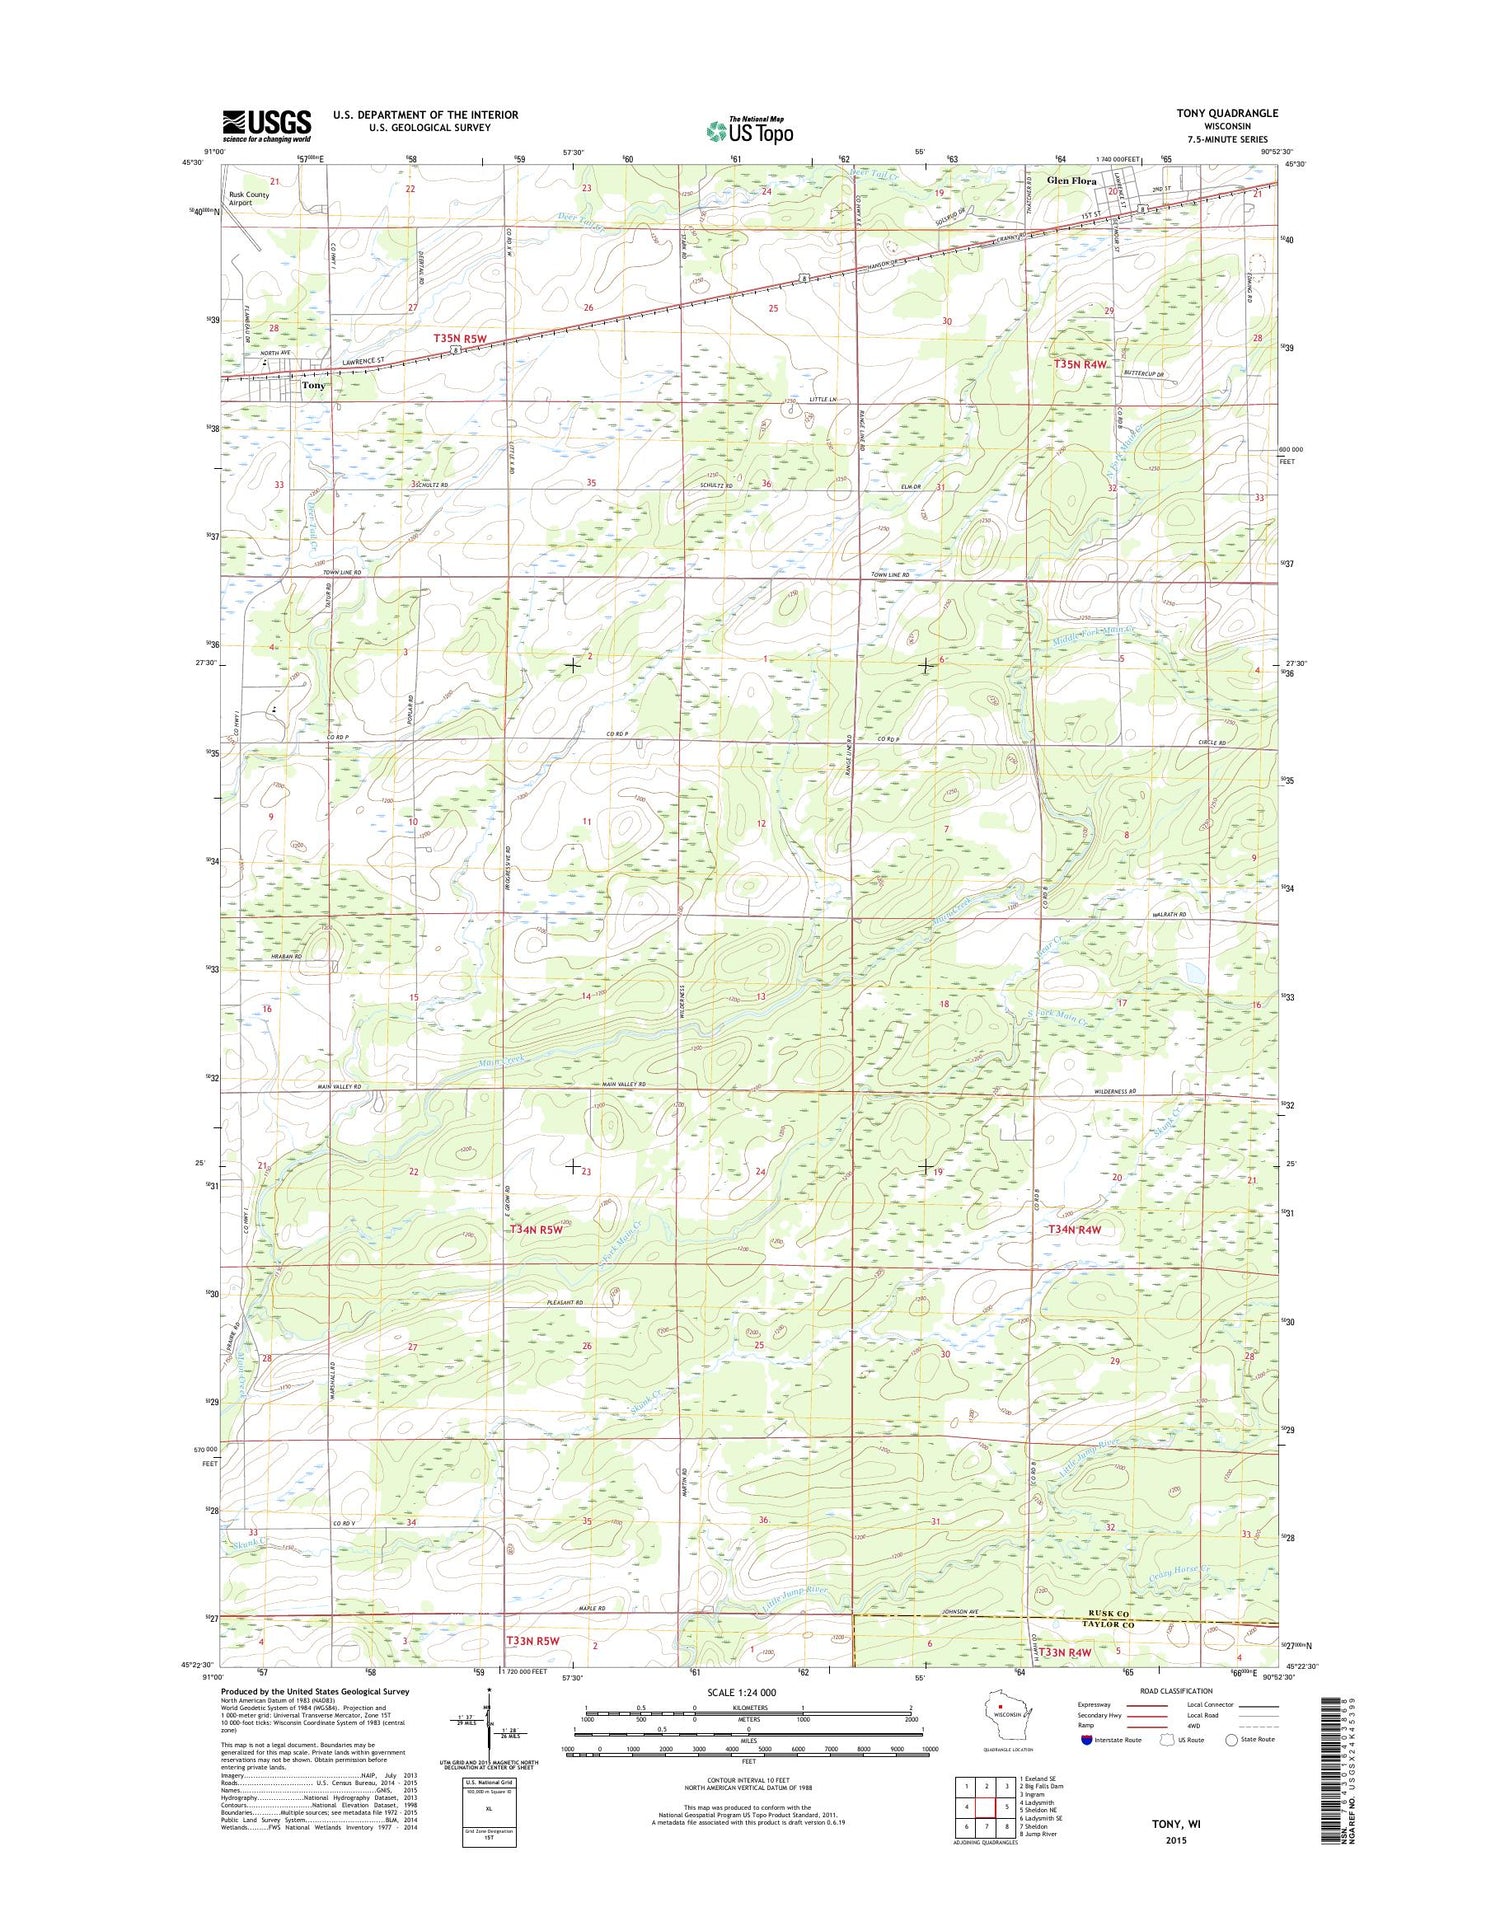 Tony Wisconsin US Topo Map Image